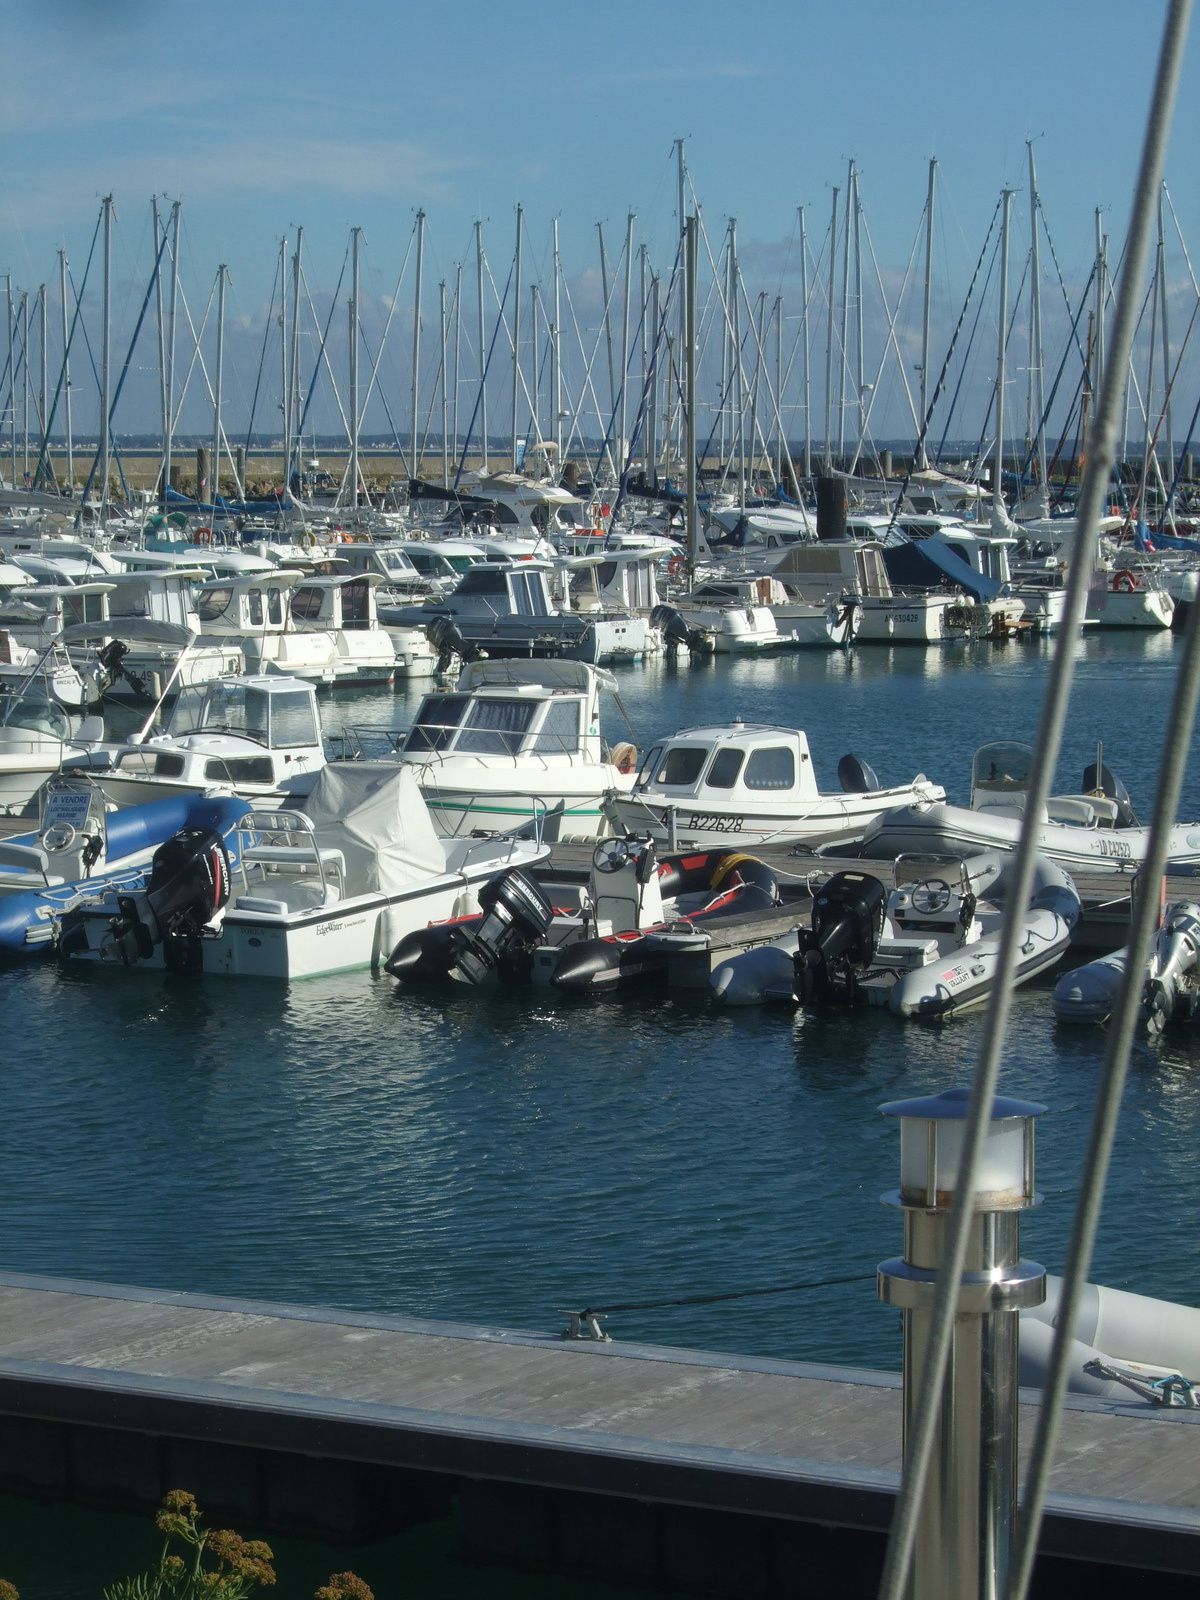 Le Port d'Haliguen - Photos prises en septembre 2013